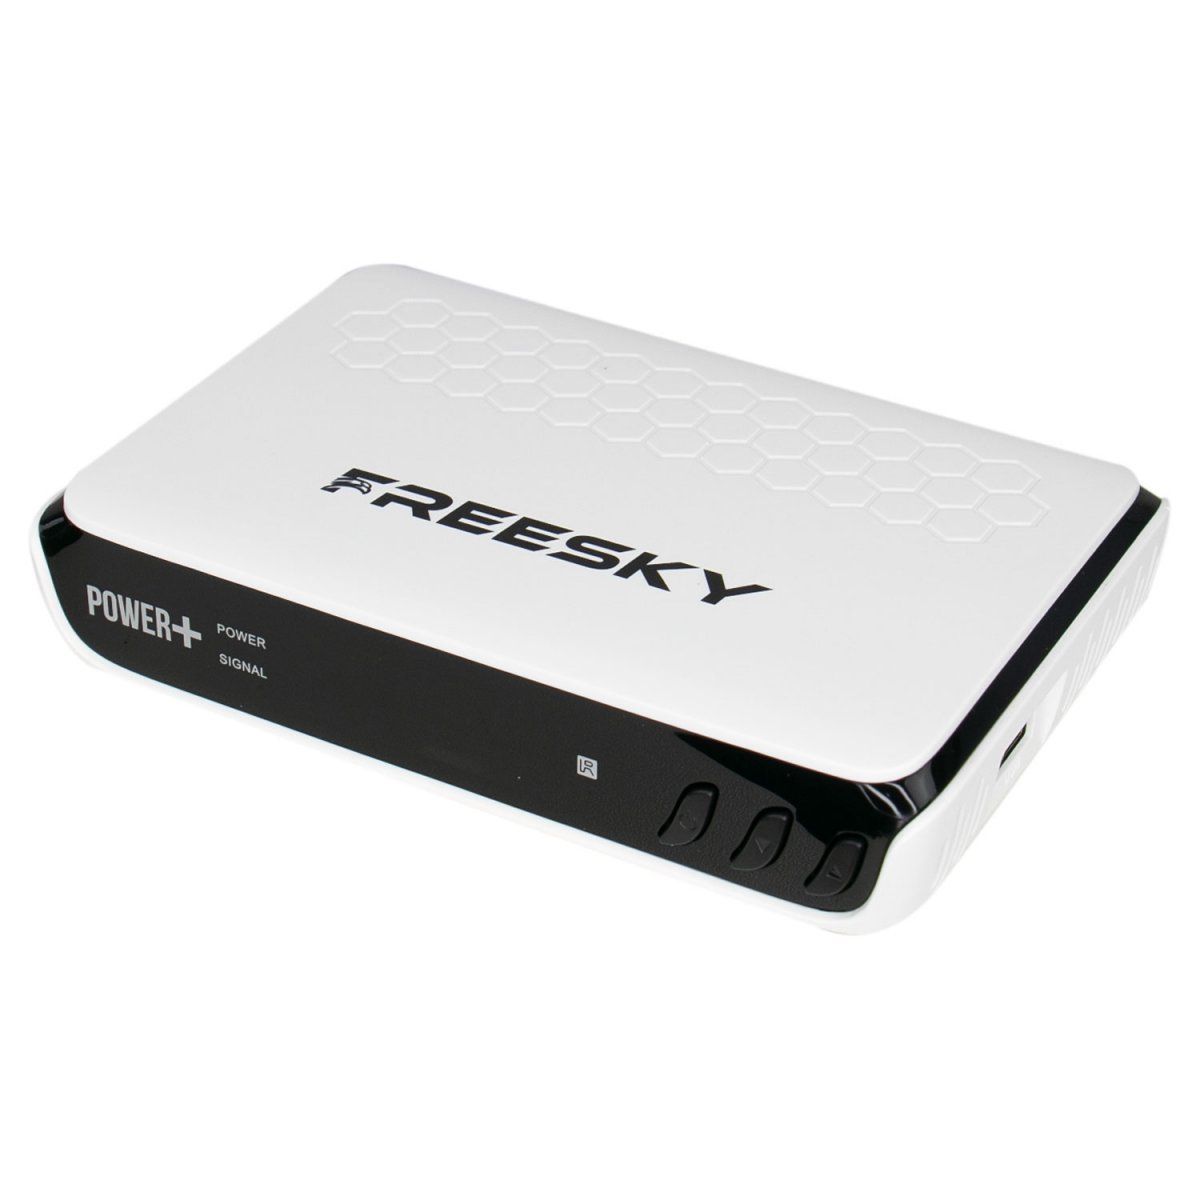 Freesky Power + Plus Atualização V1.17 Cfe472361cb9f319cf6a7112268ae8ce.jpg-1200x1200